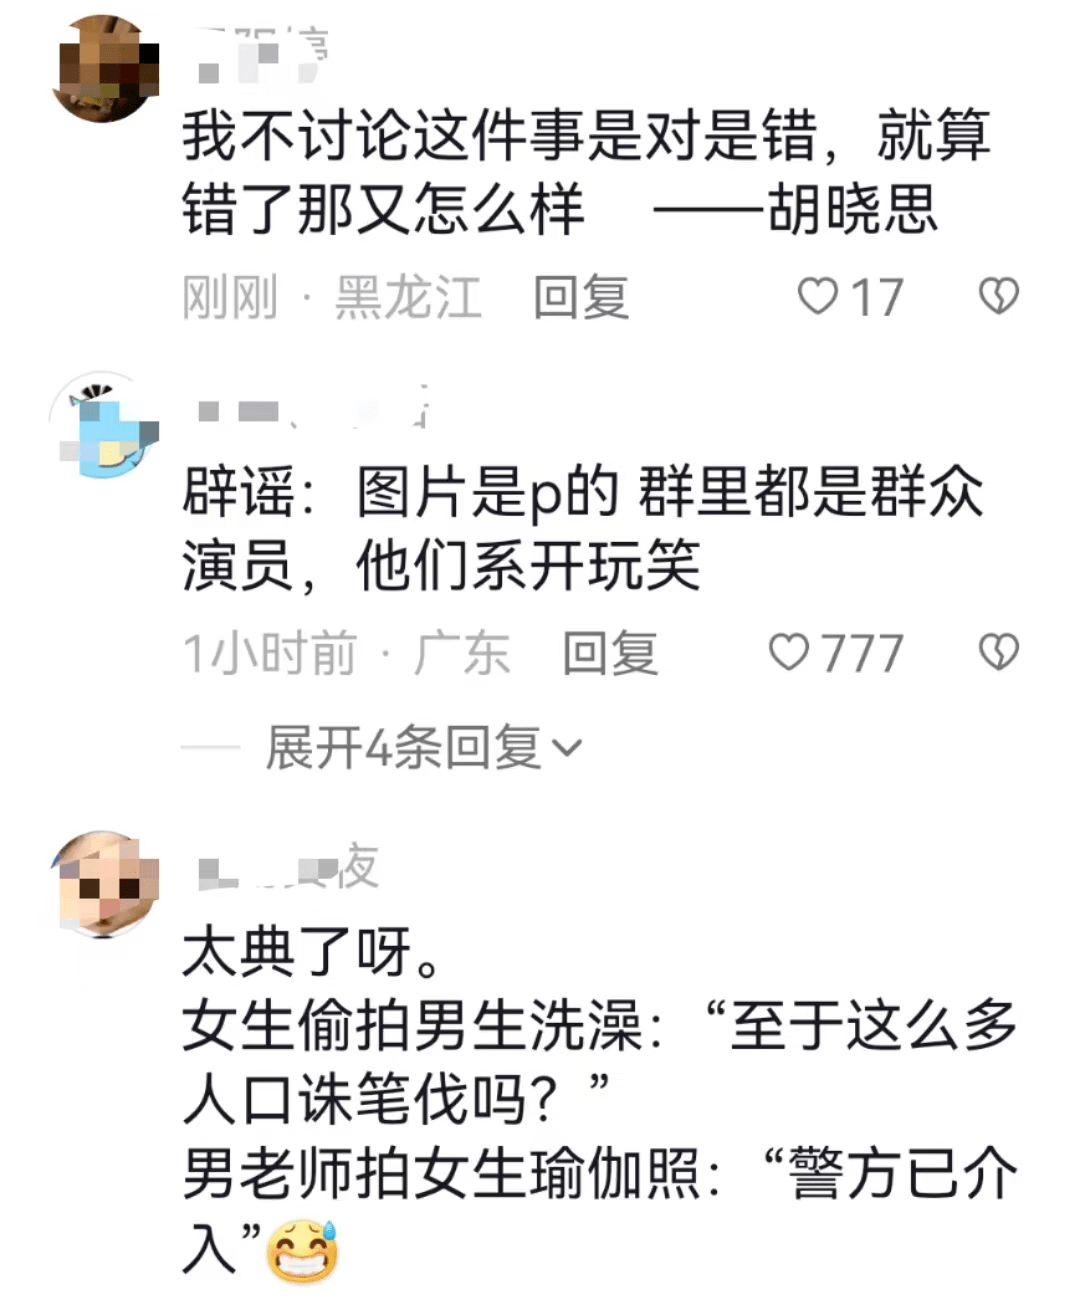 高校男教师偷拍瑜伽课女学生并发表色情言论 北京语言大学：已暂停该职工工